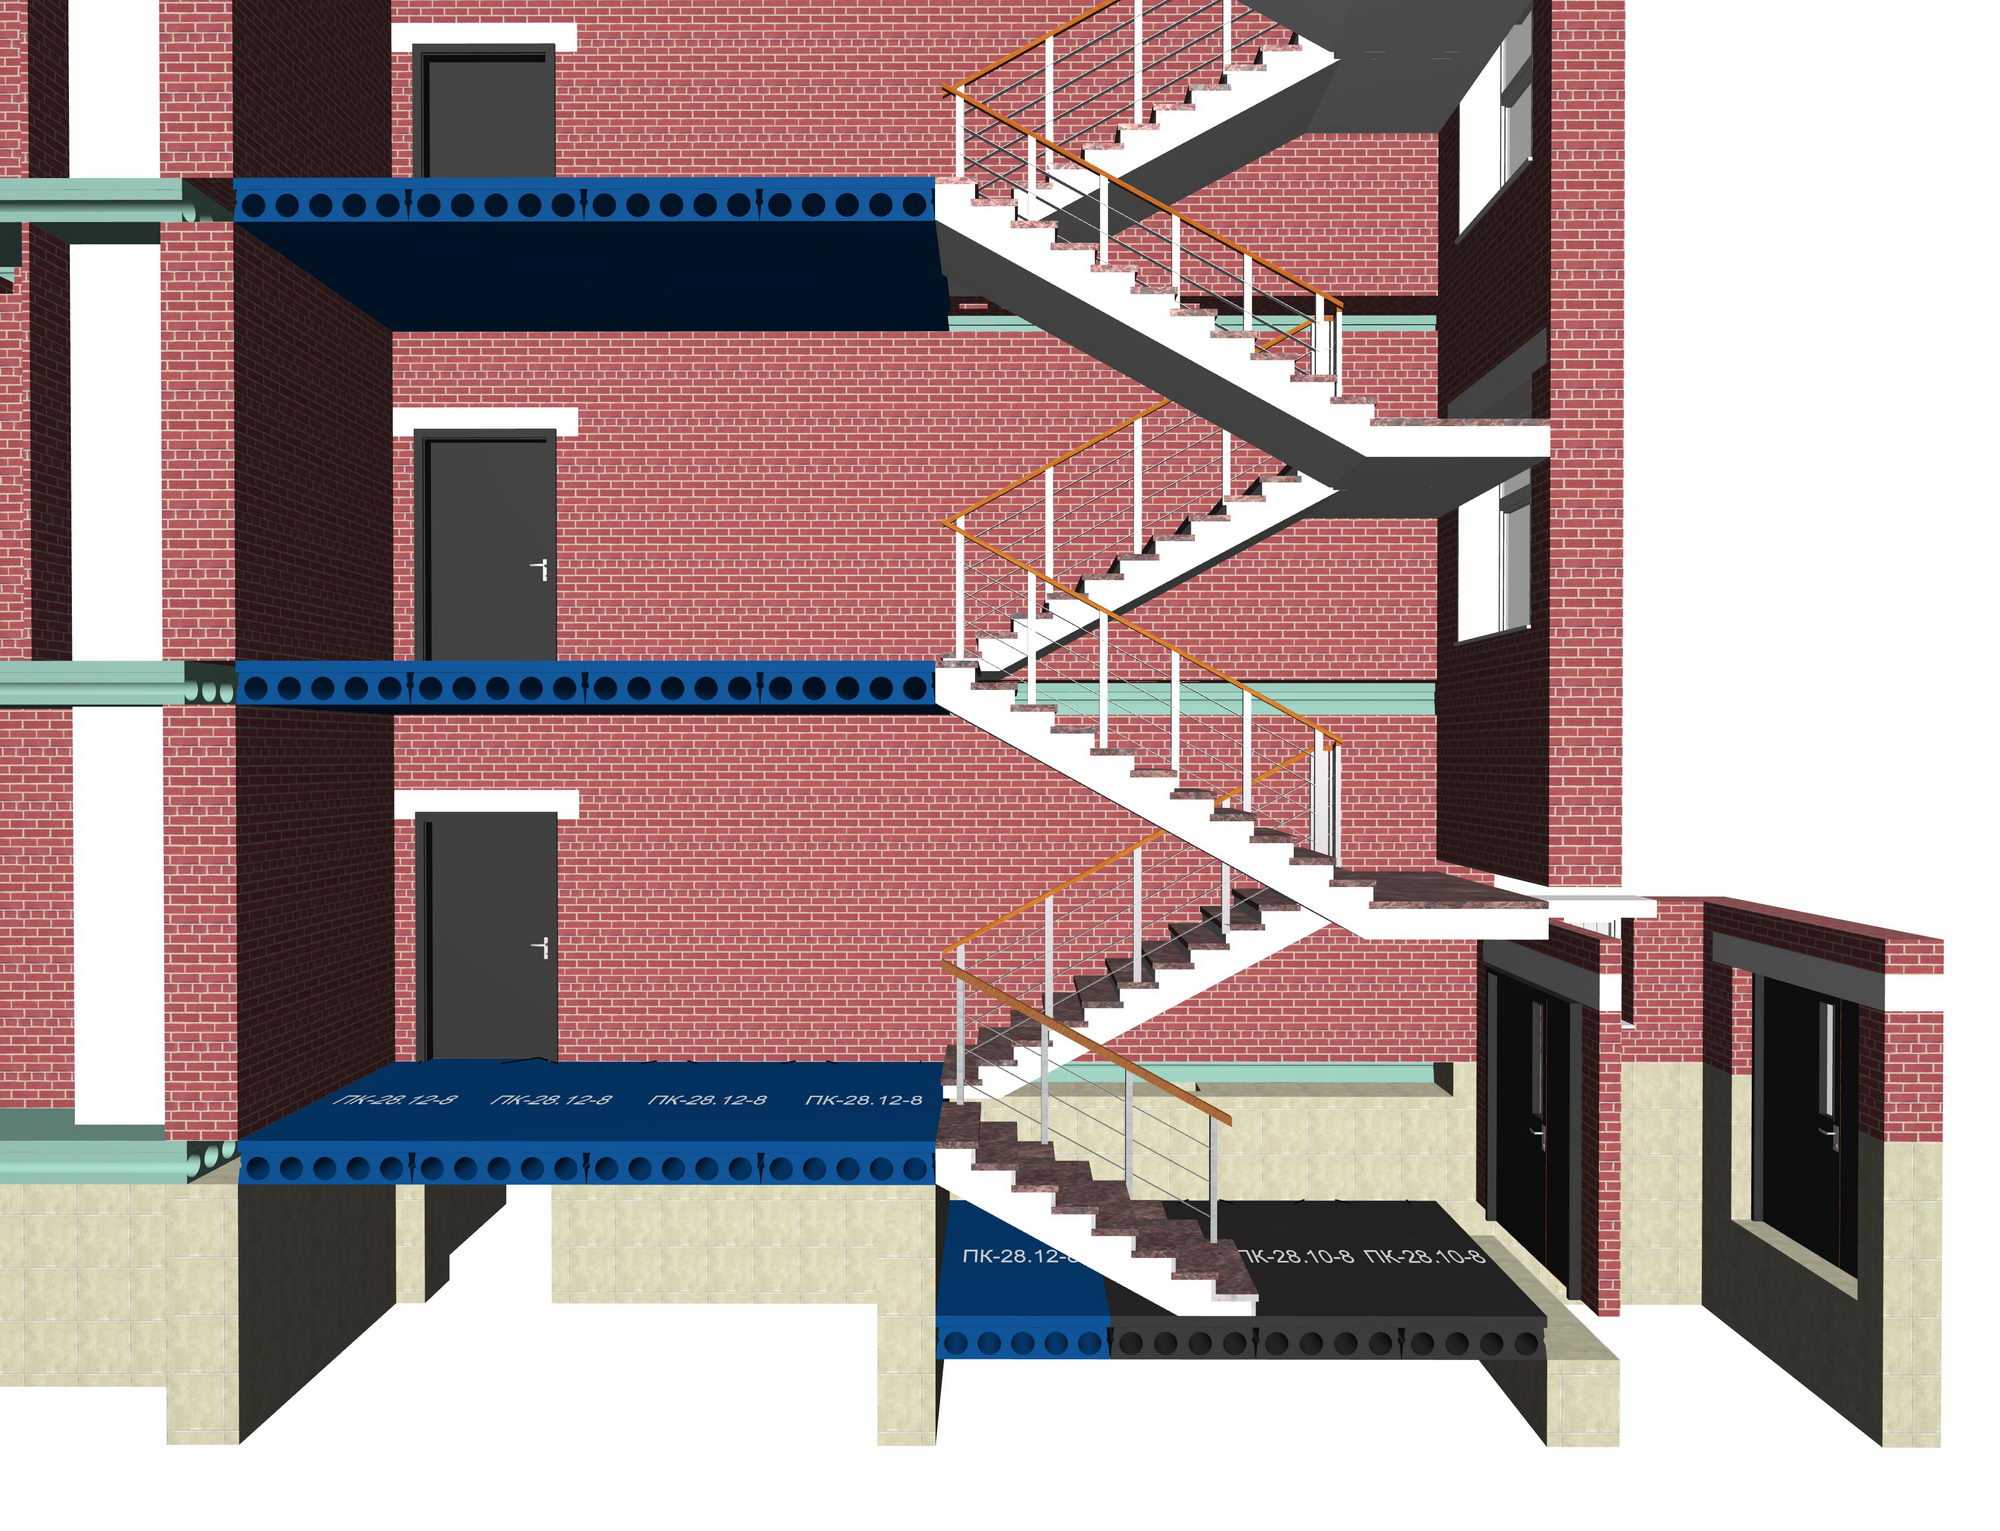 Если дом многоэтажный, то проблема установки лестницы возникает сама собой. Особенности возведения конструкции зависит от планировки помещений, потолочной высоты и предпочтений владельцев.